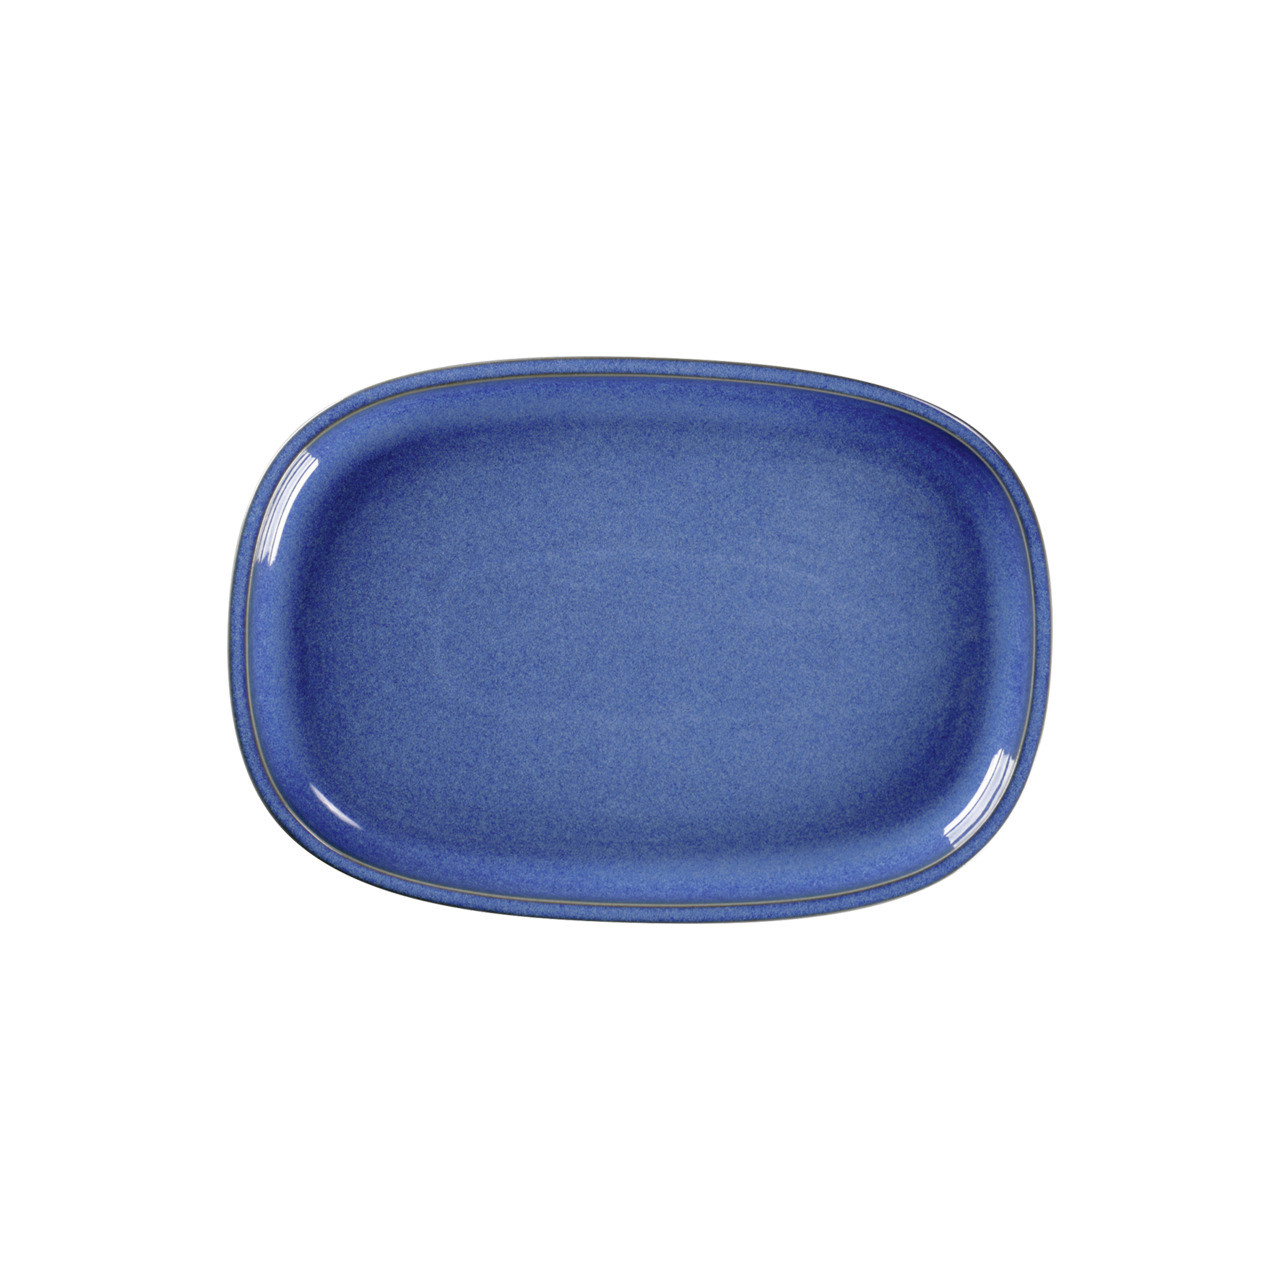 Ease, Platte oval flach 261 x 180 mm cobalt blue